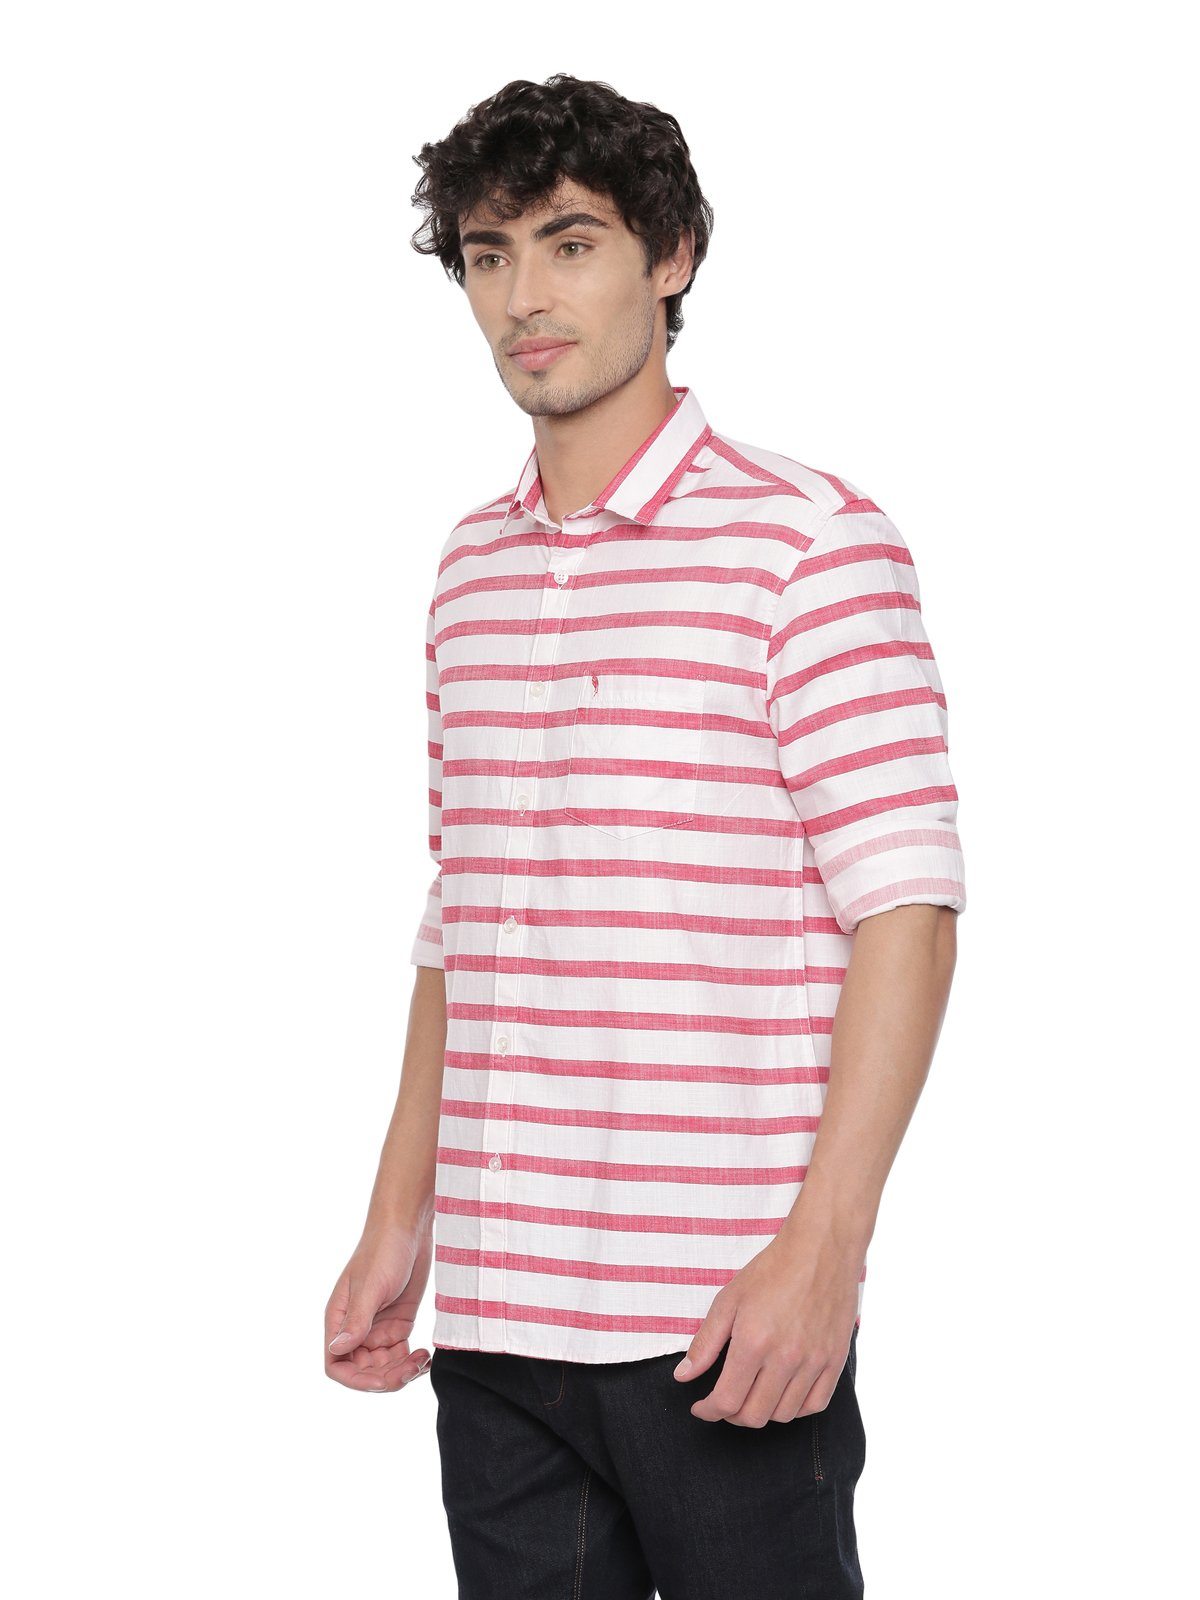 Swiss Club Mens Stripes Casual Wear Full Sleeve Slim Fit Woven Shirt SWISS CLUB Shirt Swiss Club 